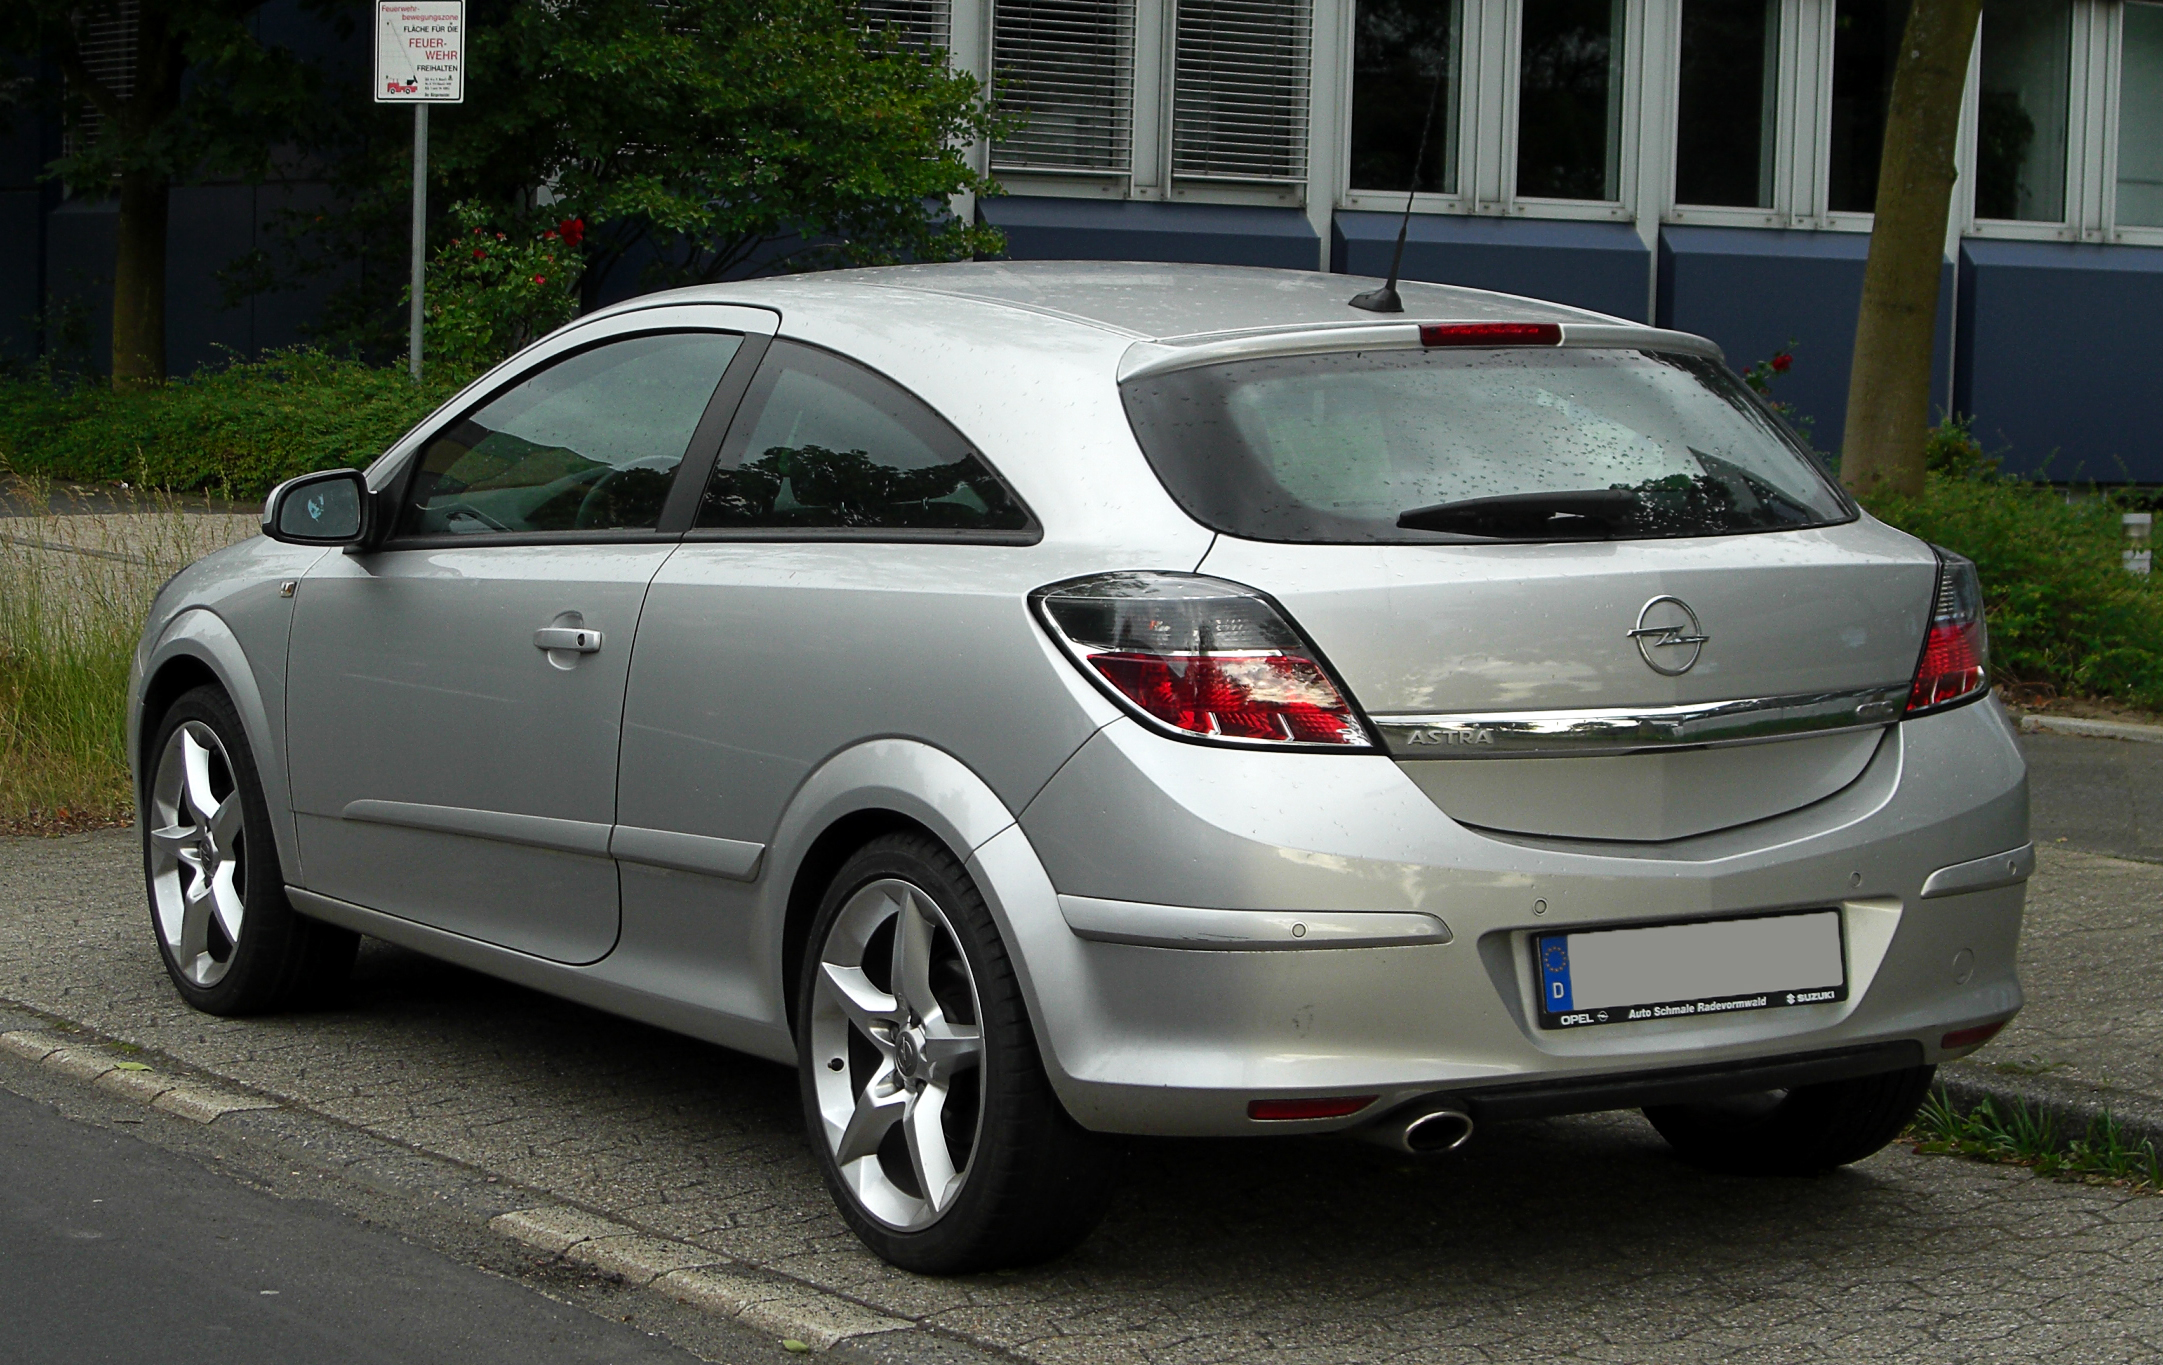 https://upload.wikimedia.org/wikipedia/commons/6/6d/Opel_Astra_GTC_%28H%2C_Facelift%29_%E2%80%93_Heckansicht%2C_28._Mai_2011%2C_Ratingen.jpg